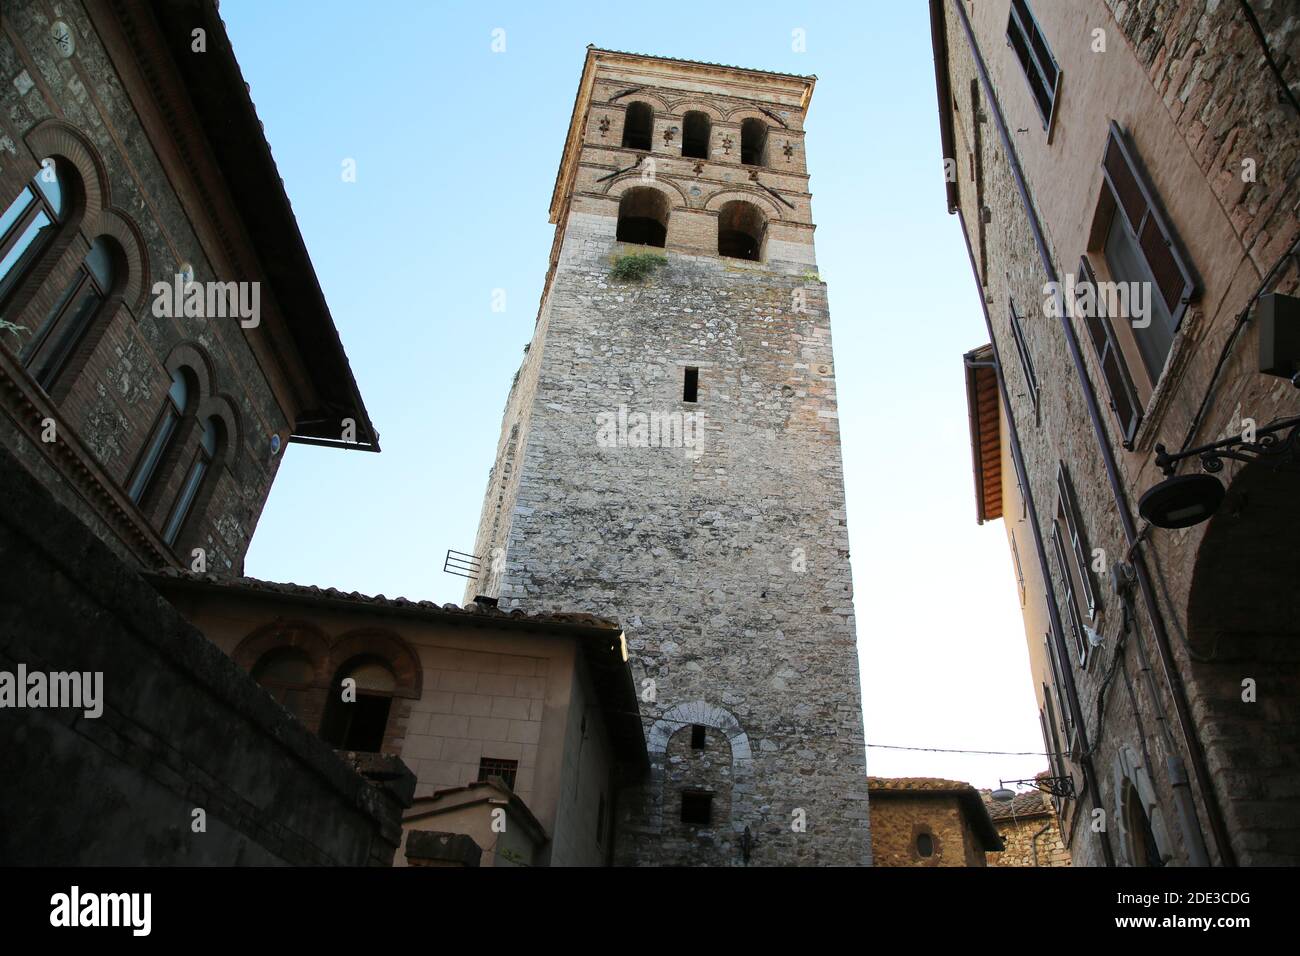 Le clocher de la ville de Narni, Italie Banque D'Images